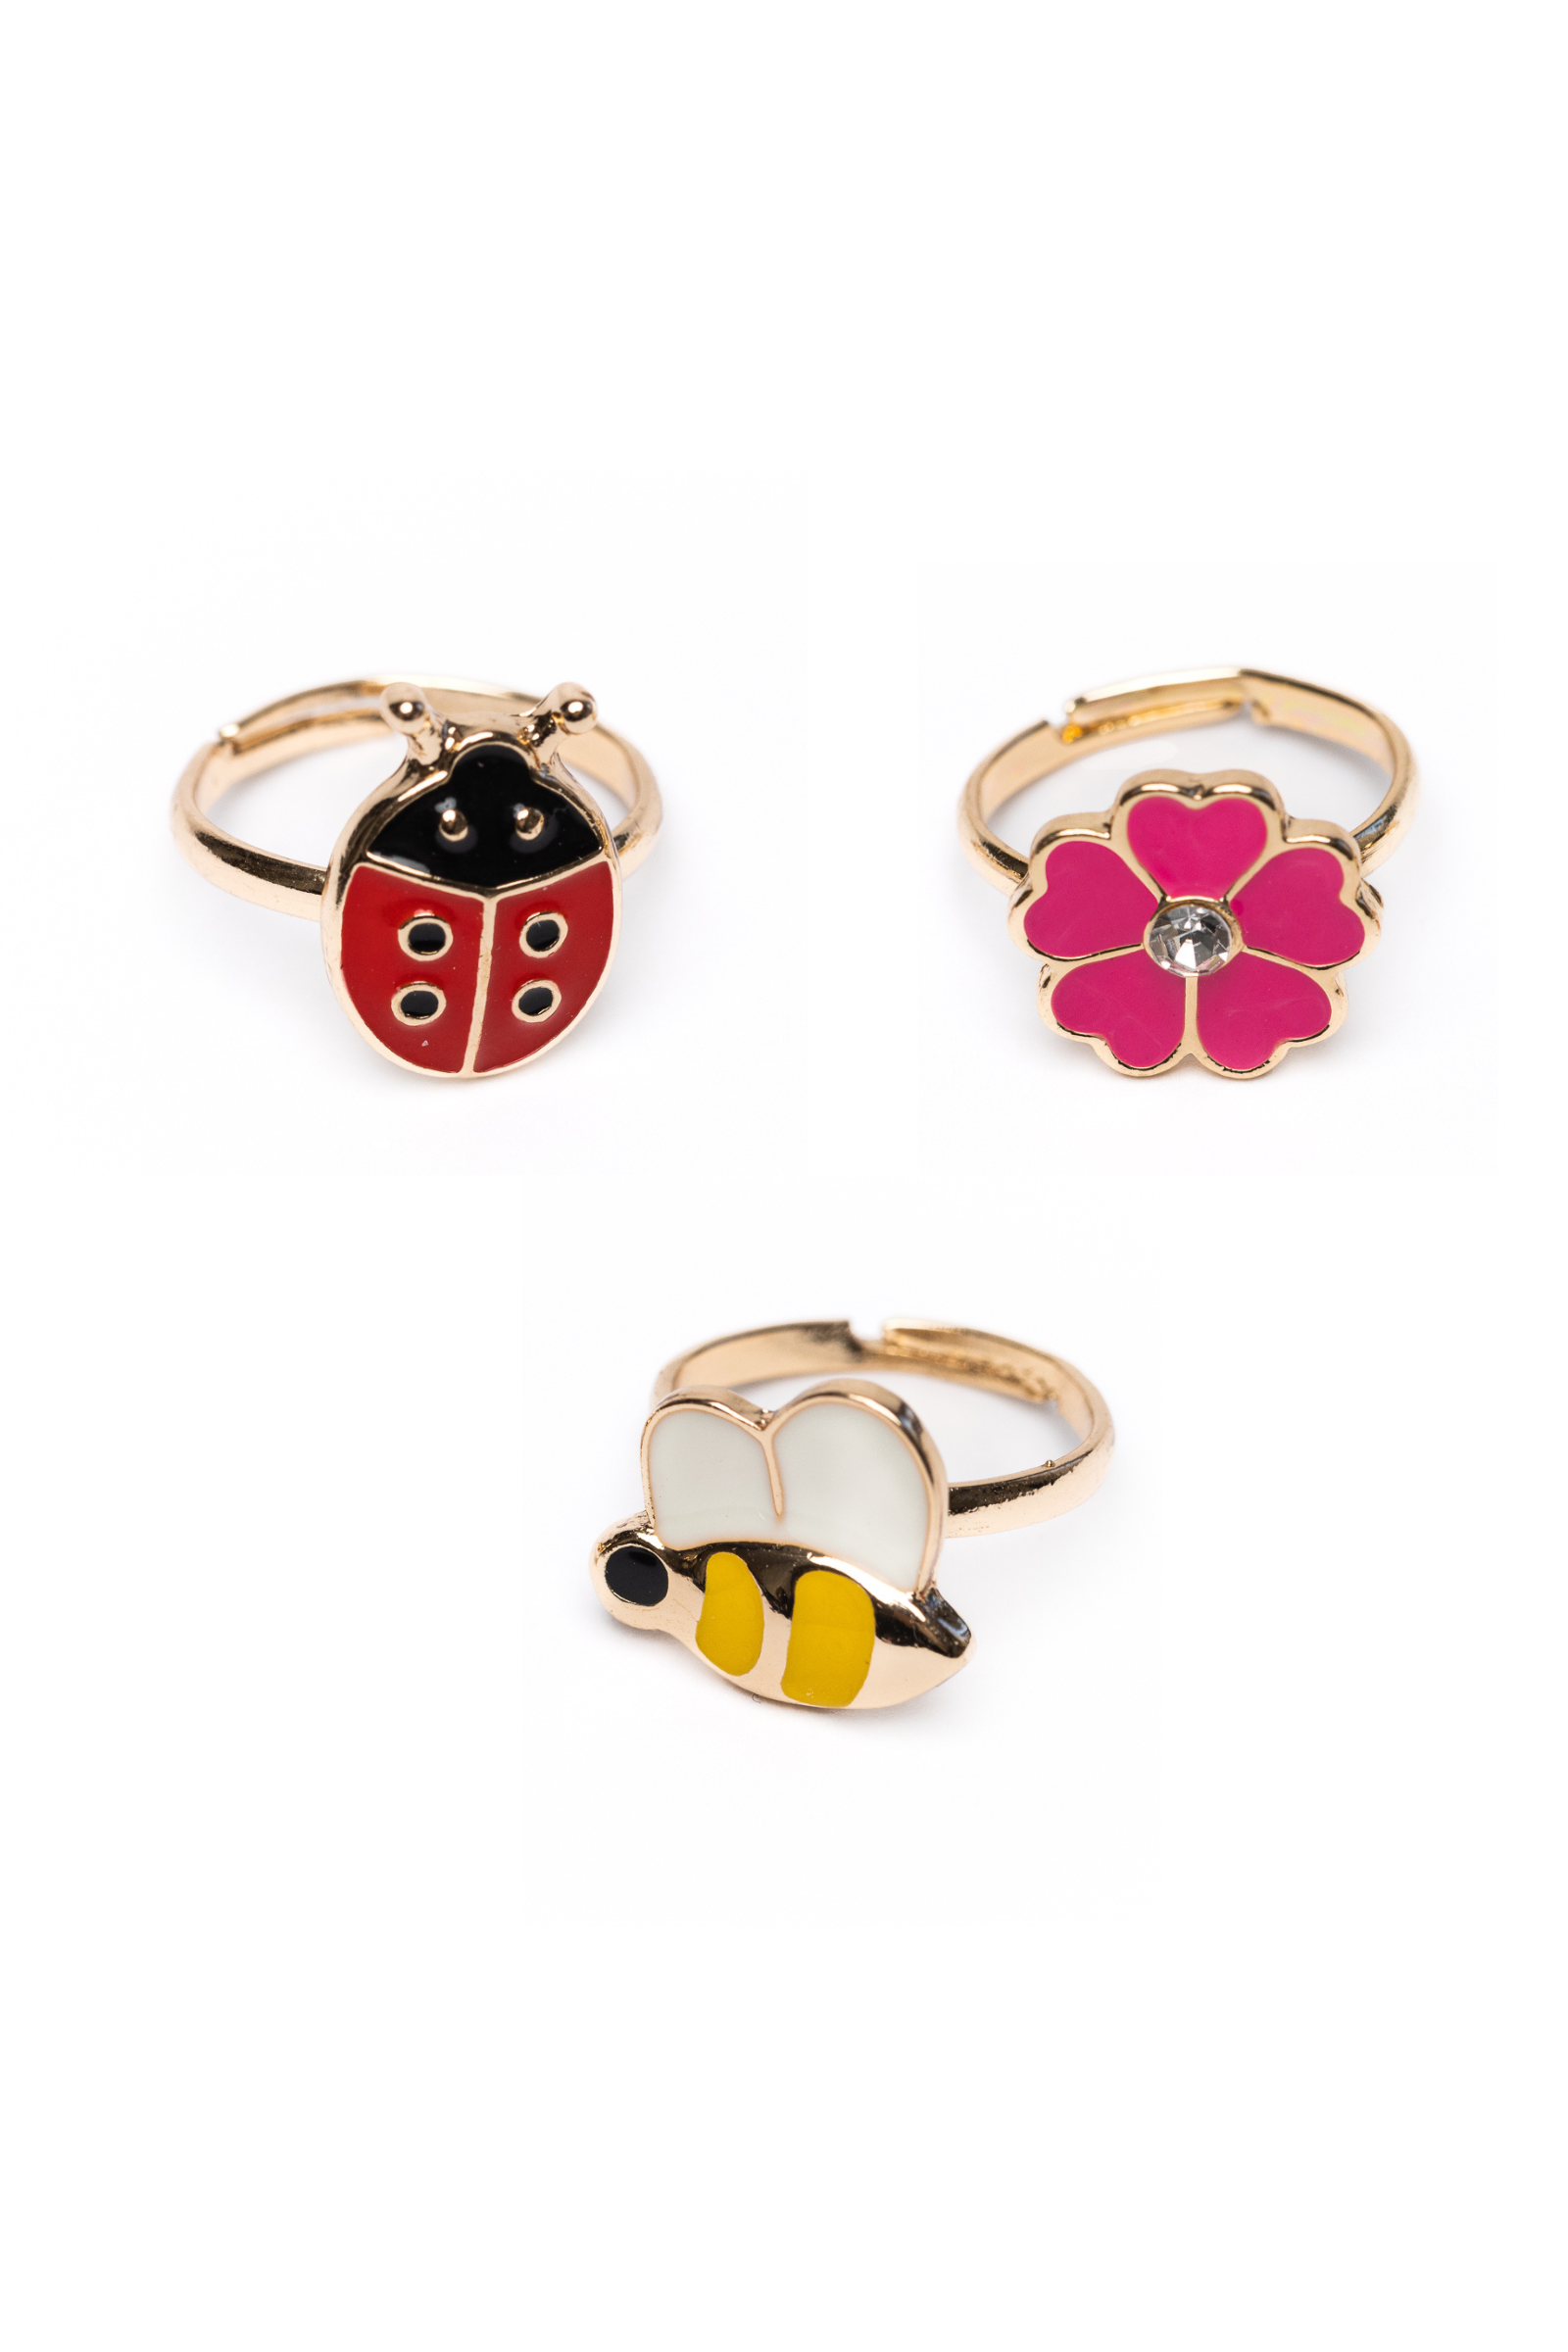 Miraculous Ladybug Jewelry Set for Girls - Bundle with Miraculous Ladybug  Charm Bracelet, Rings, and Earrings Miraculous Ladybug Bracelet Set 